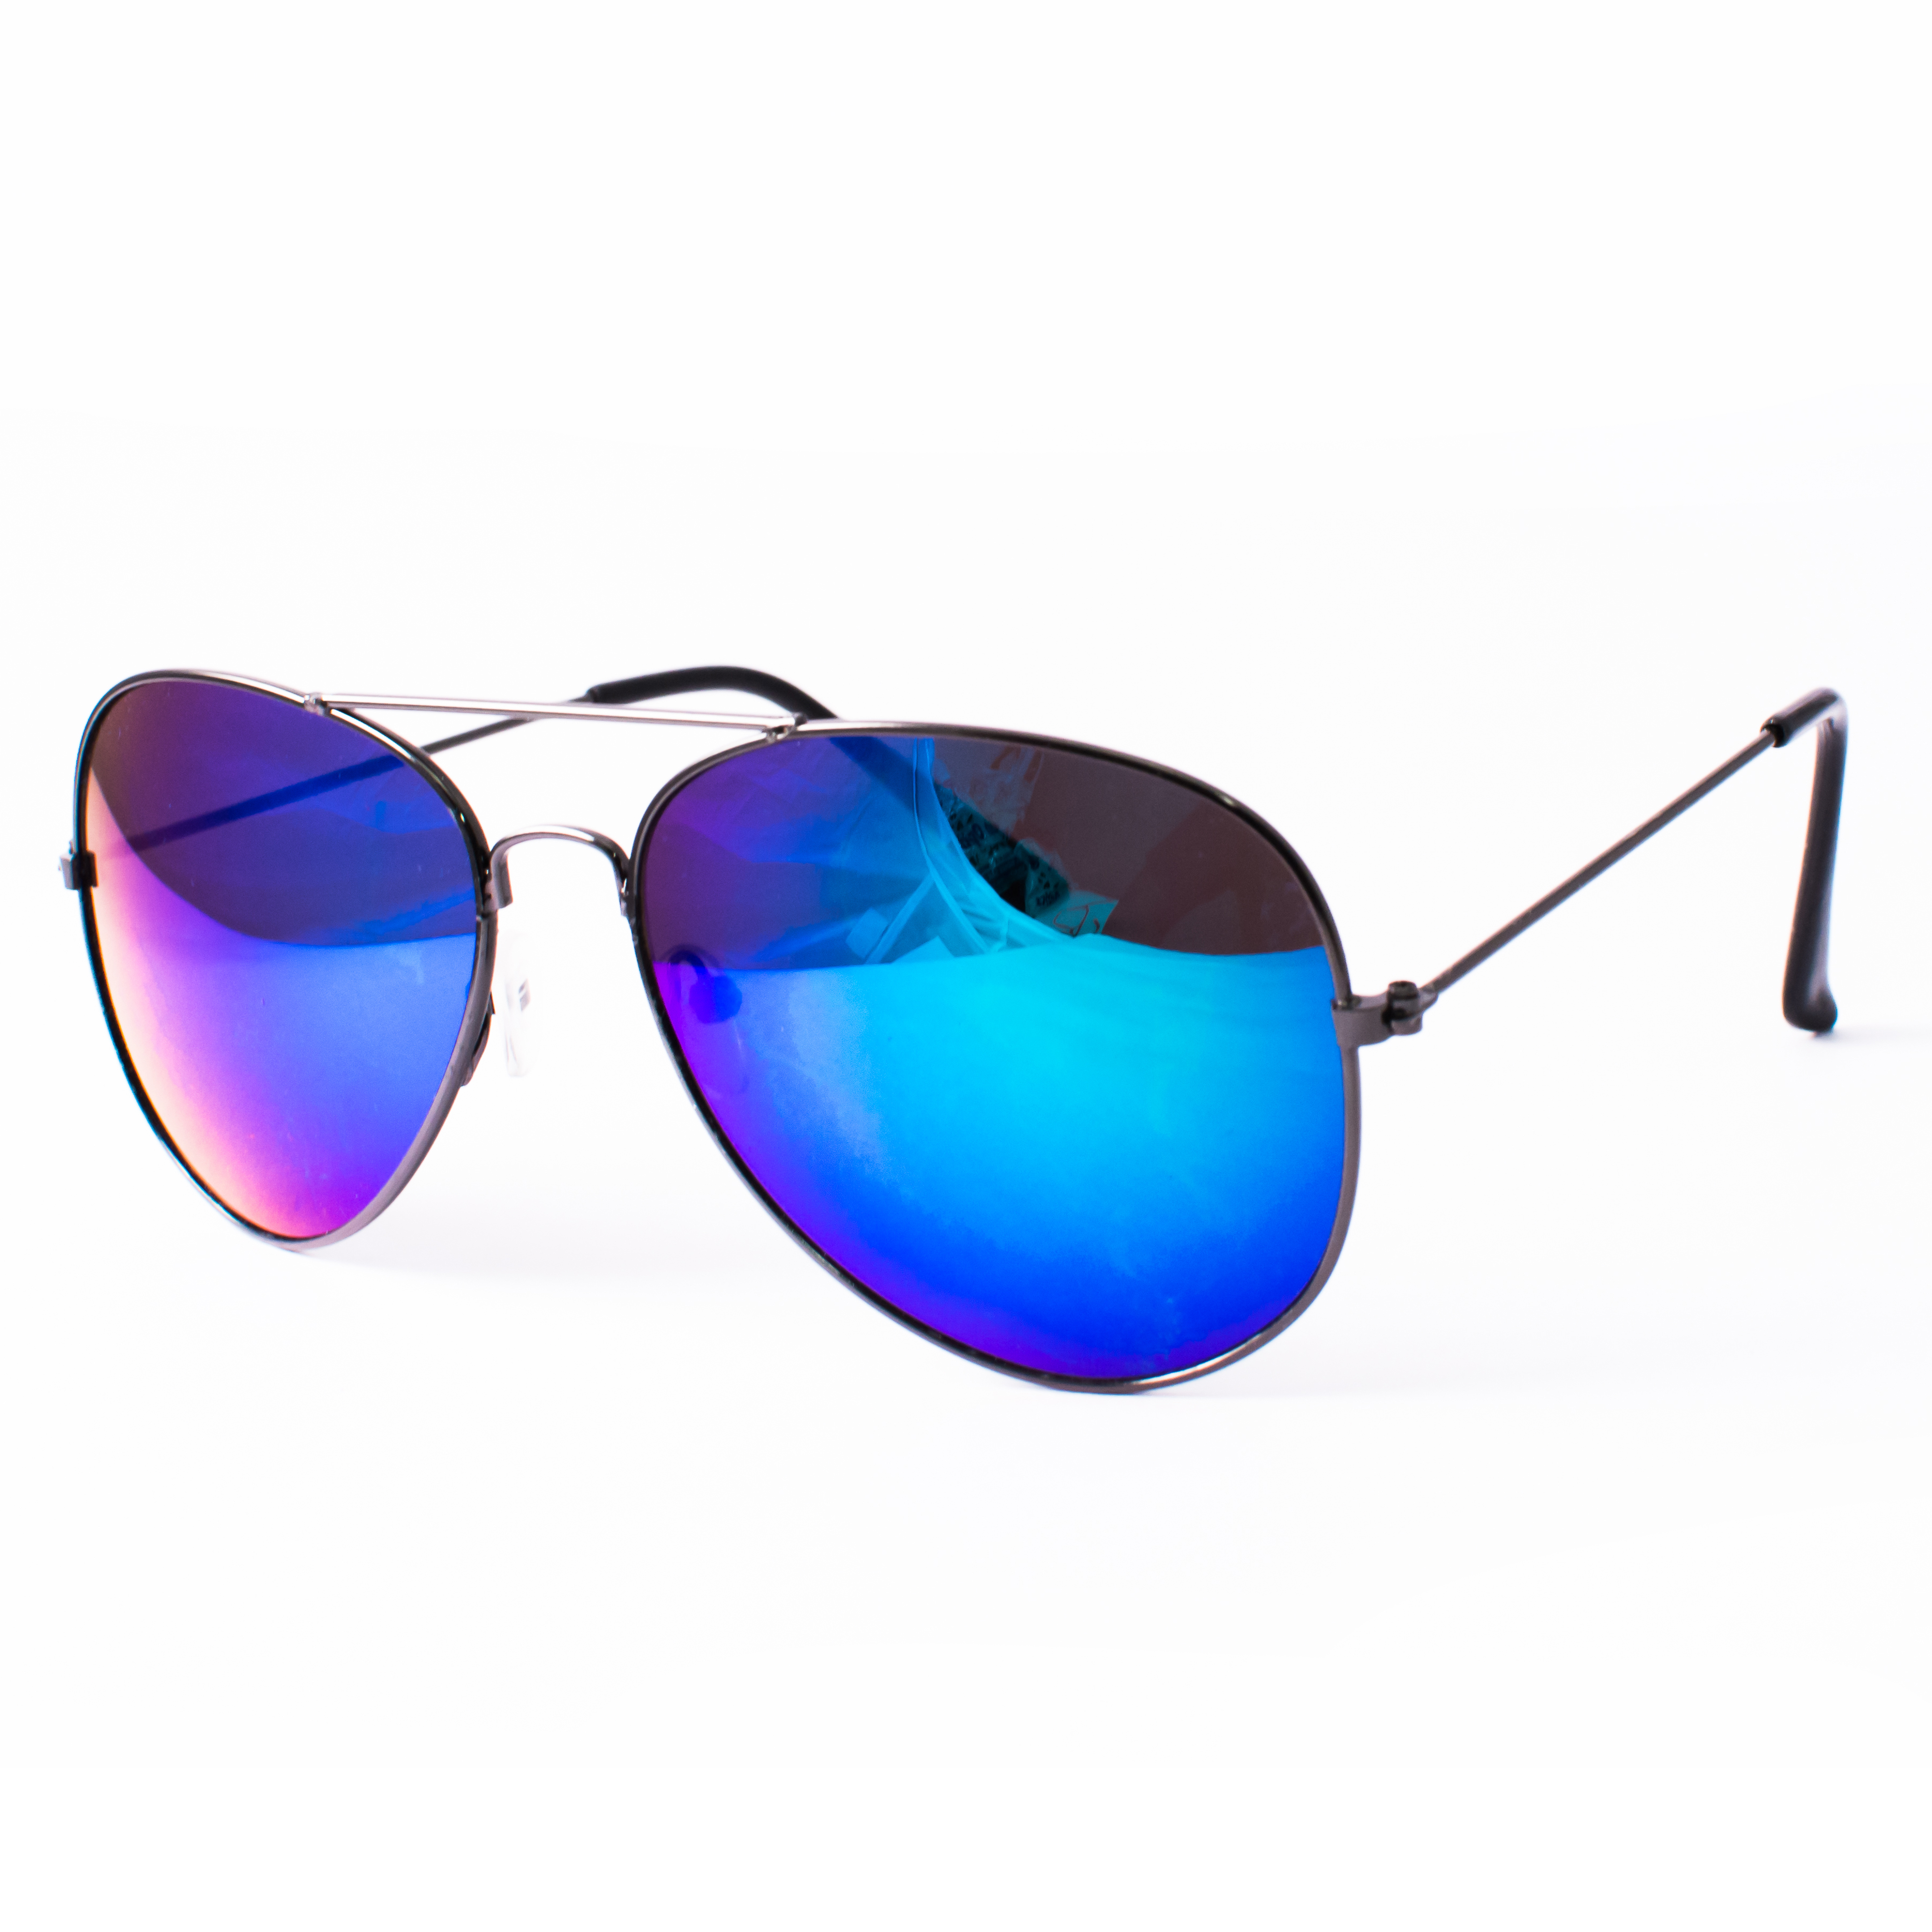 Go Sunglasses Sunglass - GO 038S